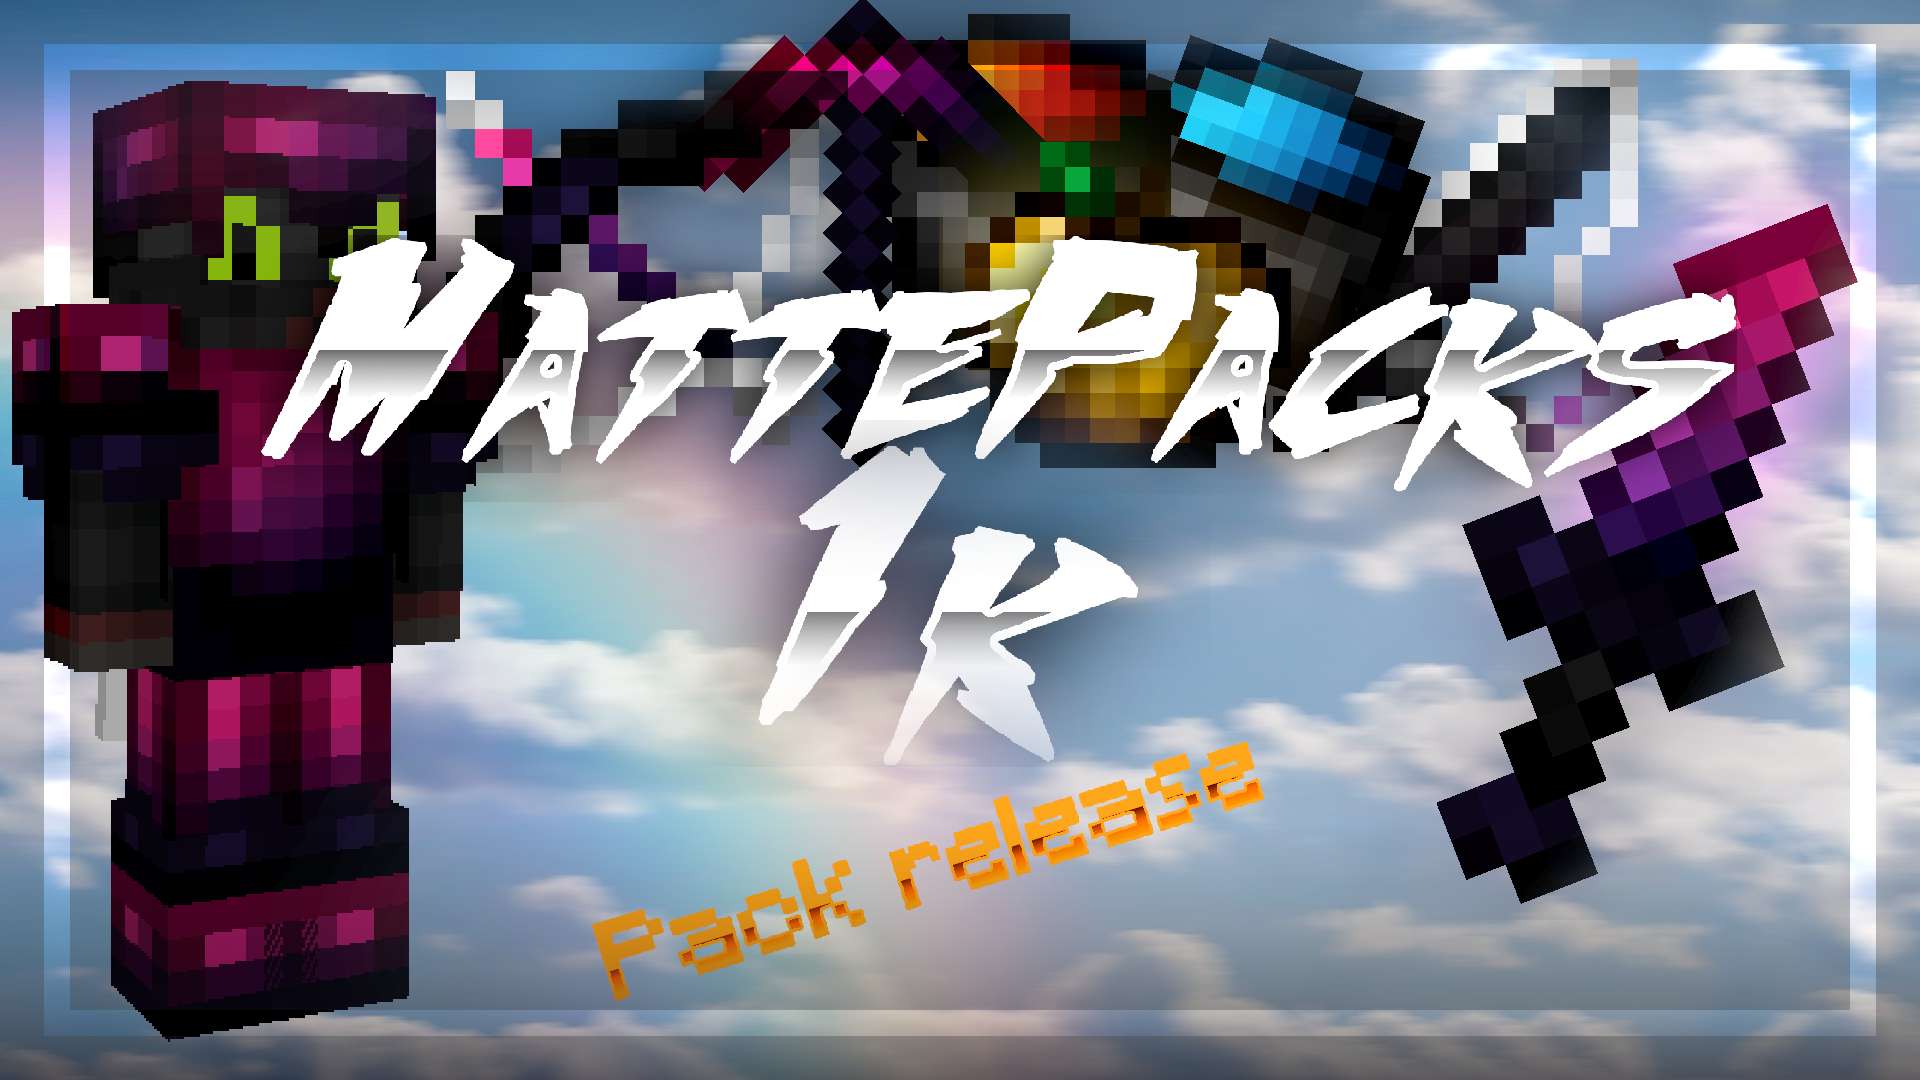 MattePacks 1k 16 by MattePacks on PvPRP